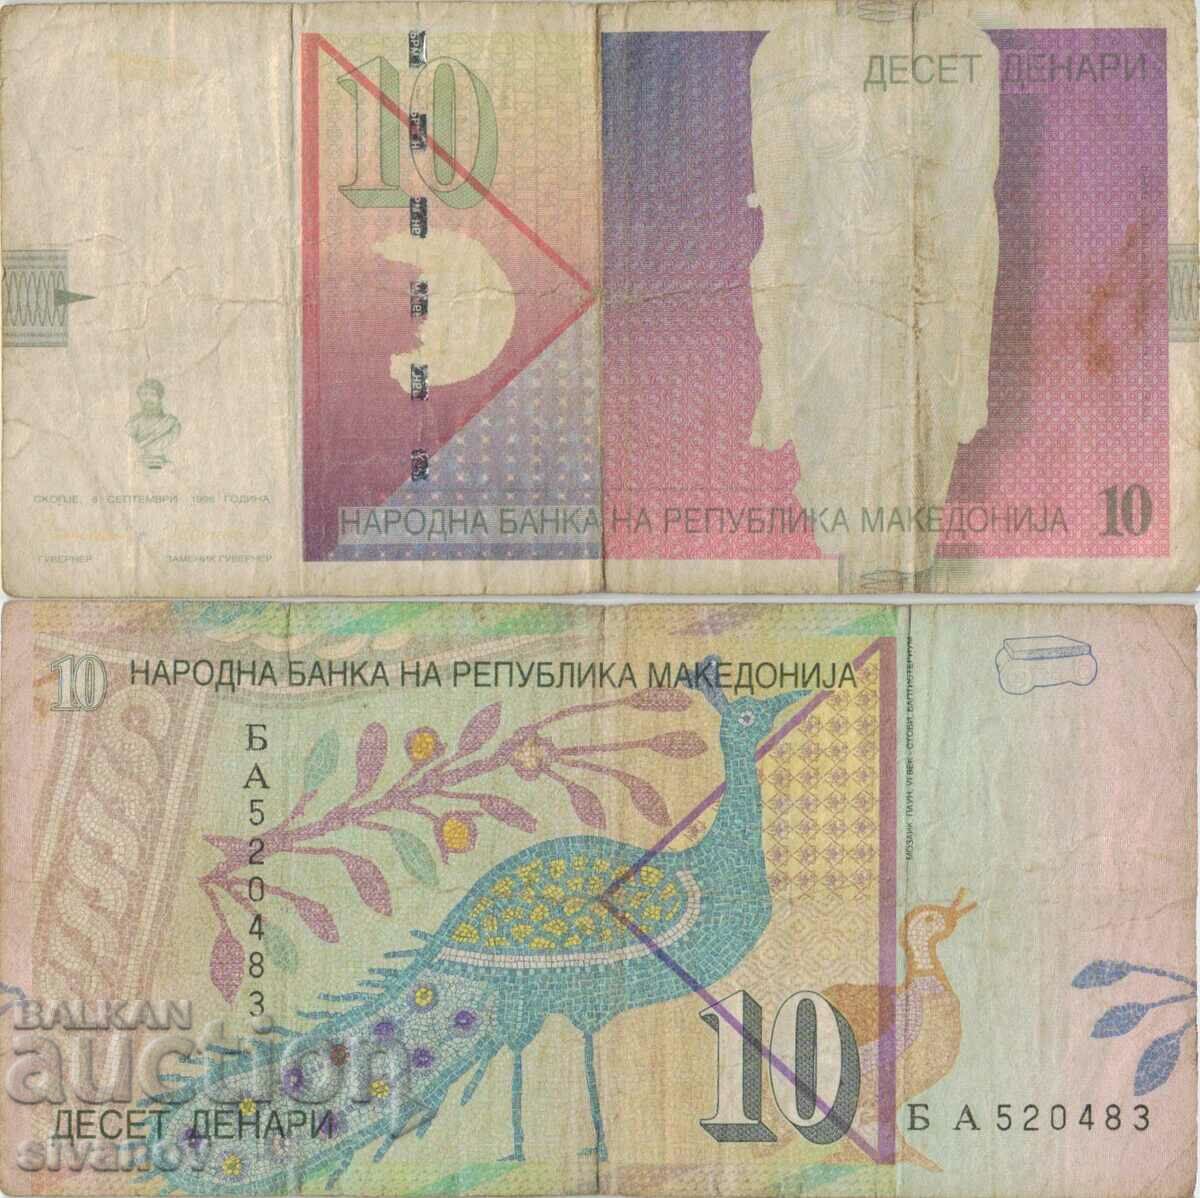 Μακεδονία 10 denar τραπεζογραμμάτιο 1996 #5225